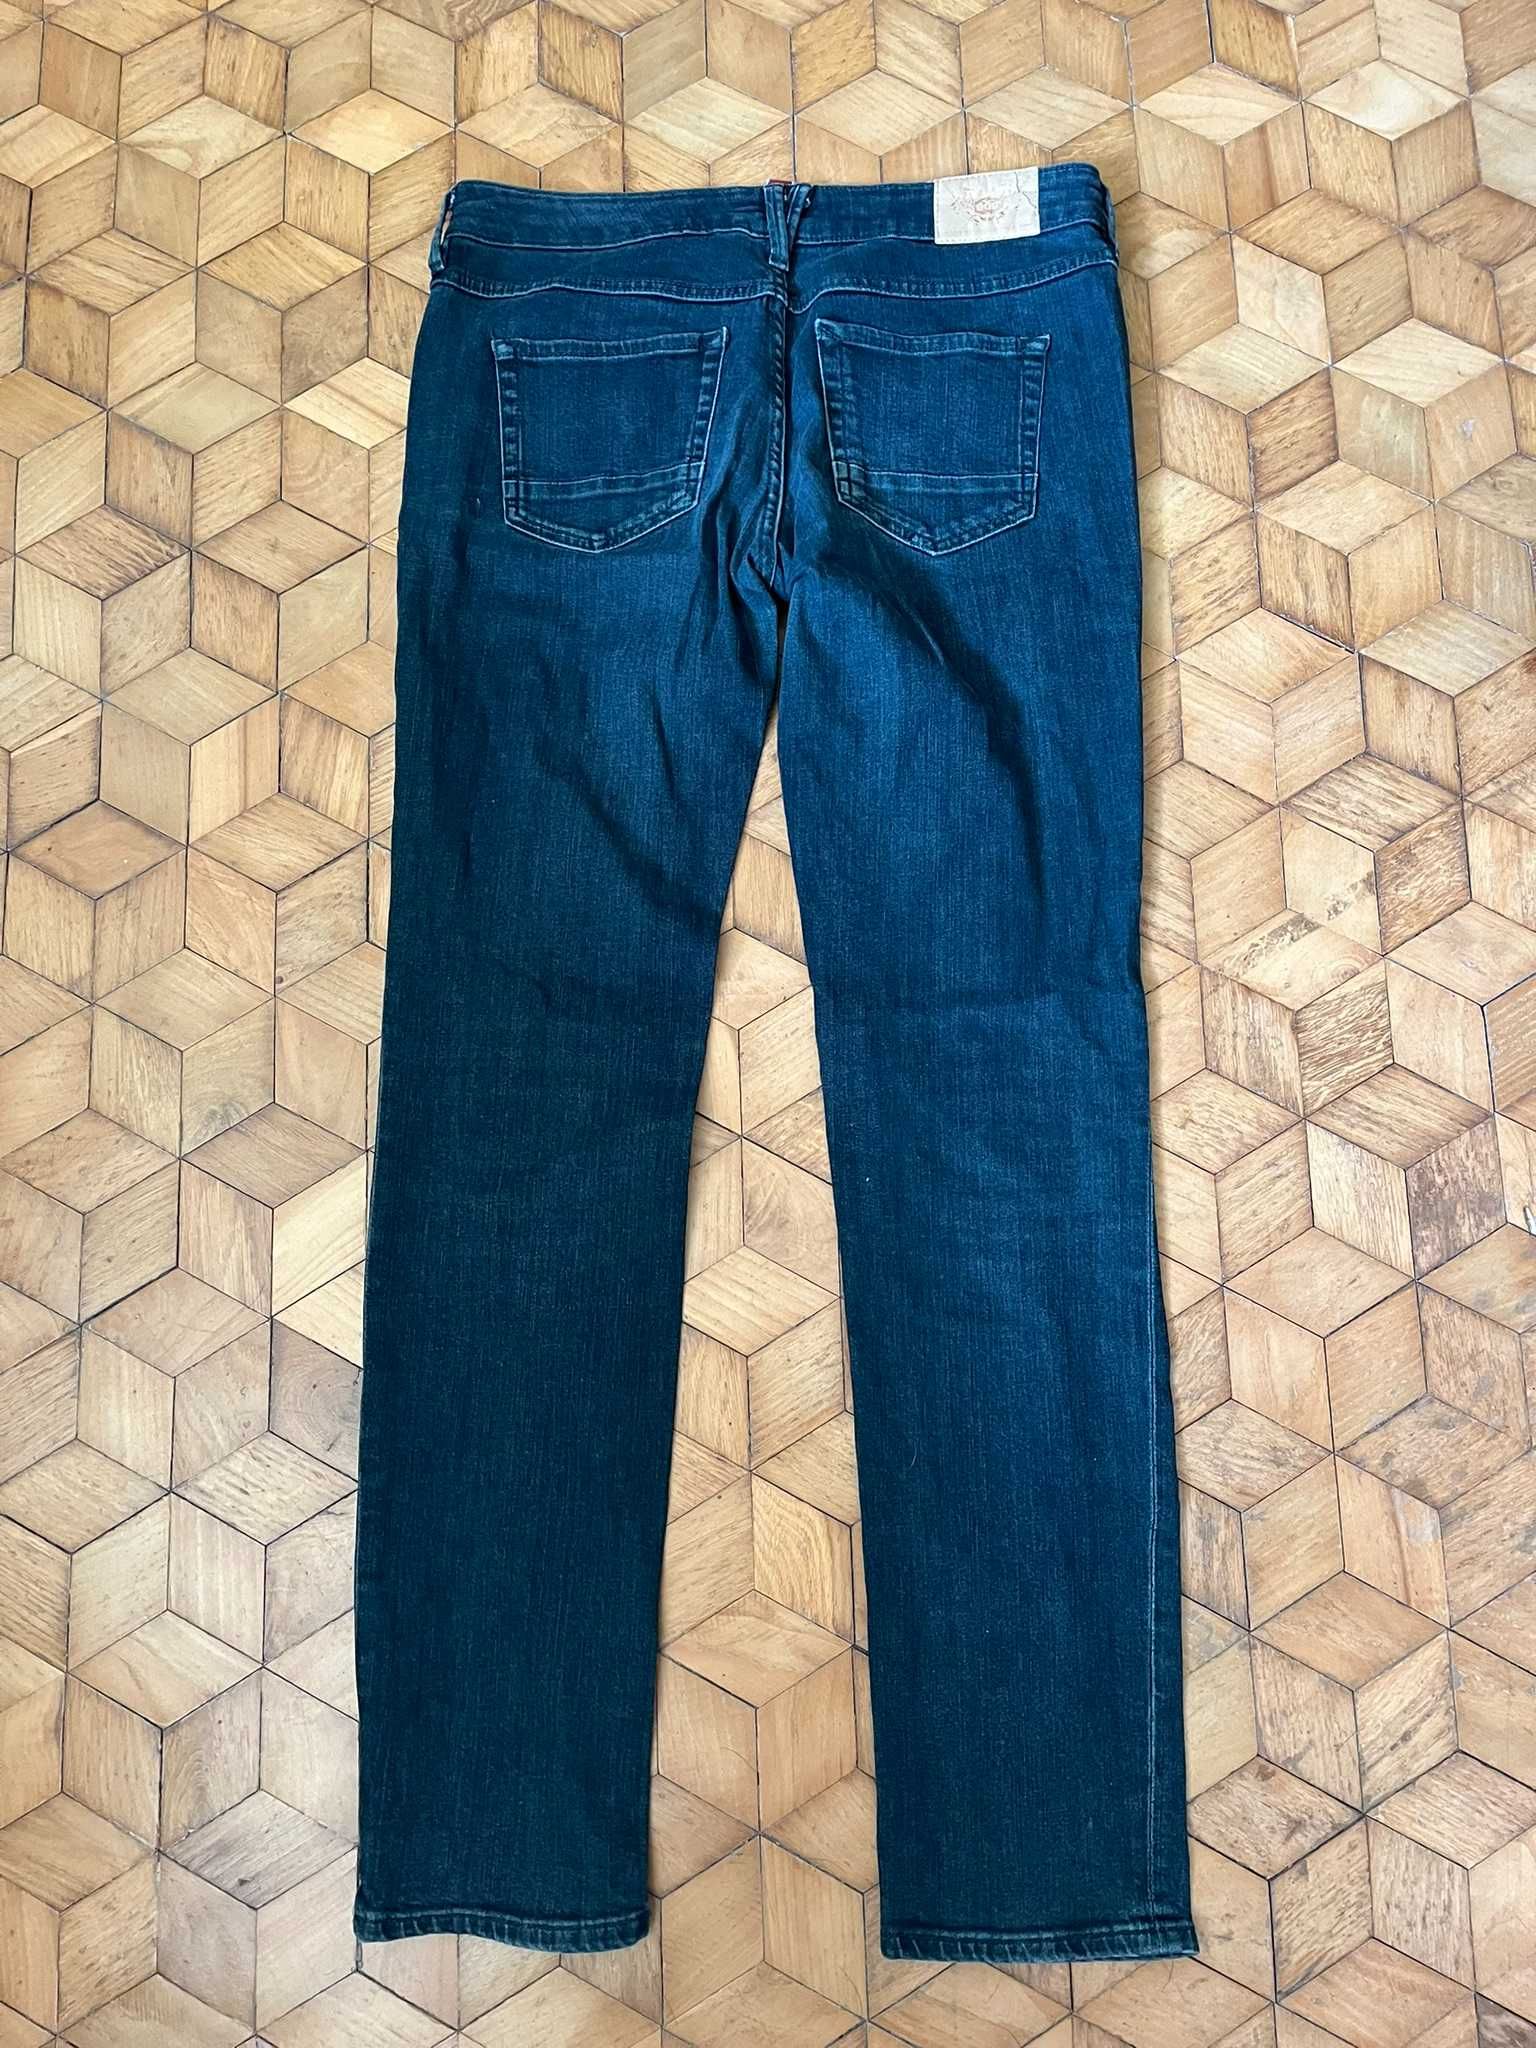 Spodnie jeansowe damskie Esprit 31/32 L